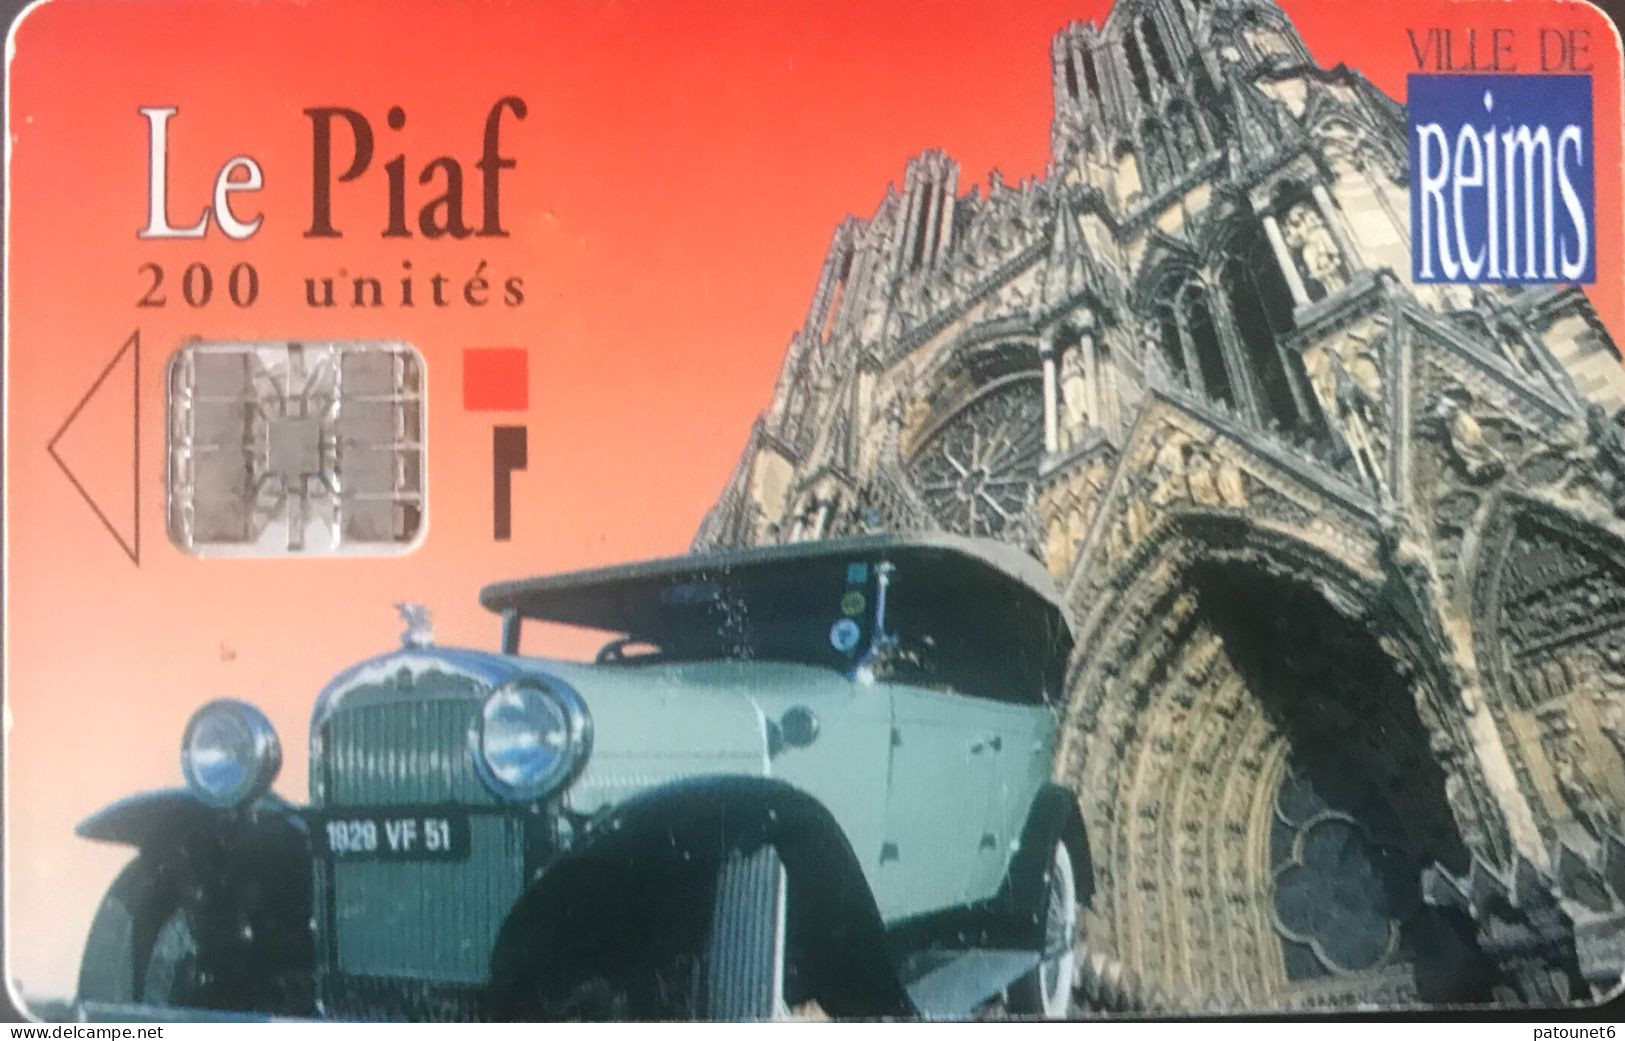 PIAF   -  REIMS   -   Voiture + Cathédrale  (fond Rouge)  - 220 Unités - Cartes De Stationnement, PIAF